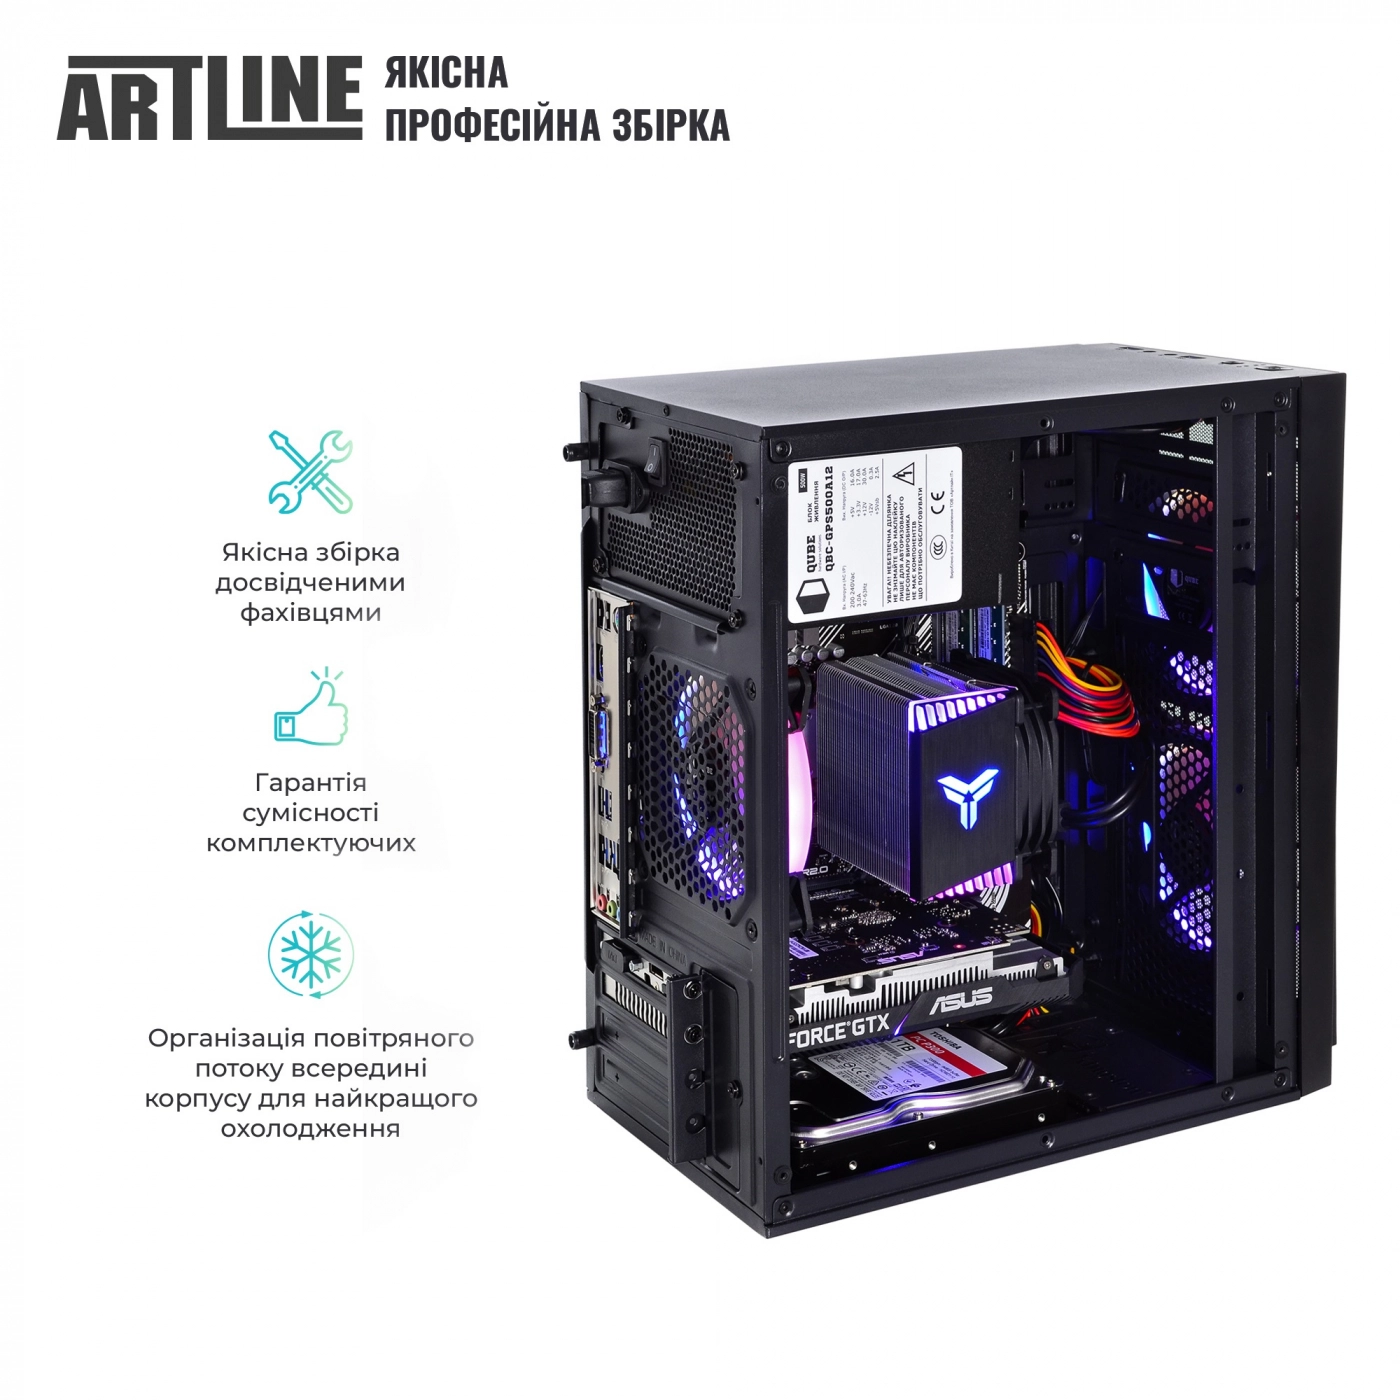 Купить Компьютер ARTLINE Gaming X43v29 - фото 5